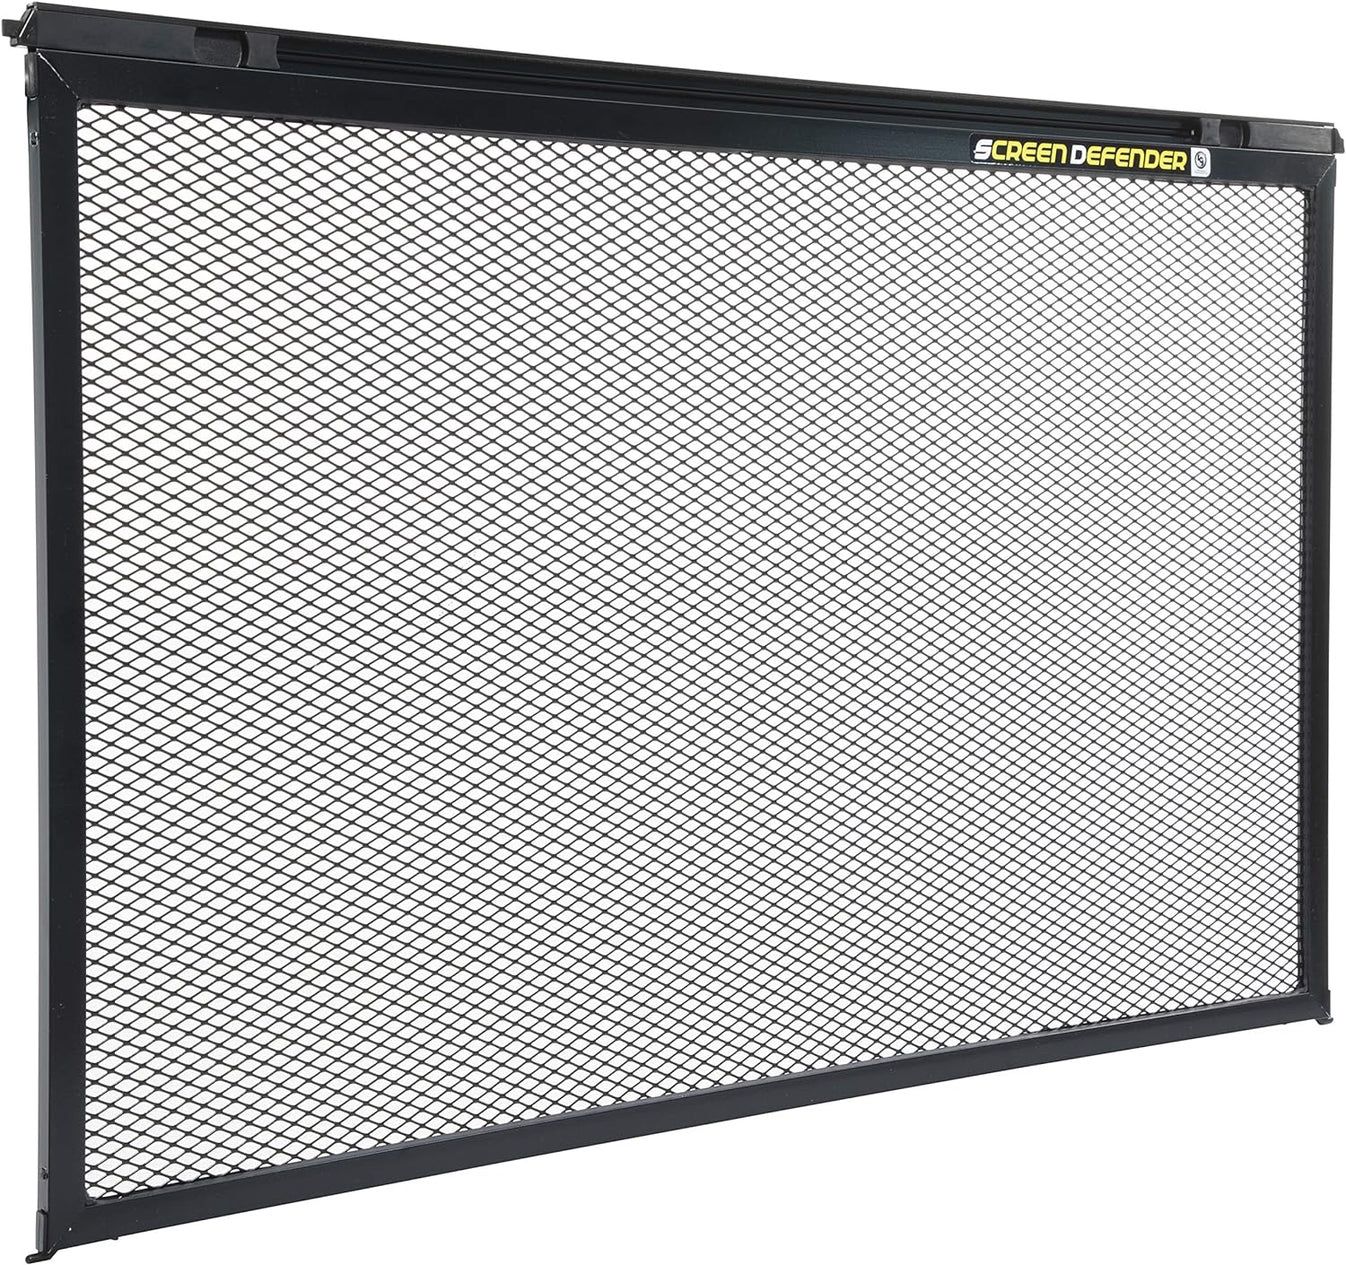 NEW - Lippert Components 859791 Screen Defender RV Entry Door Aluminum Screen Protector, 24-inch Door (20.5" Screen Kit) - Retail $76